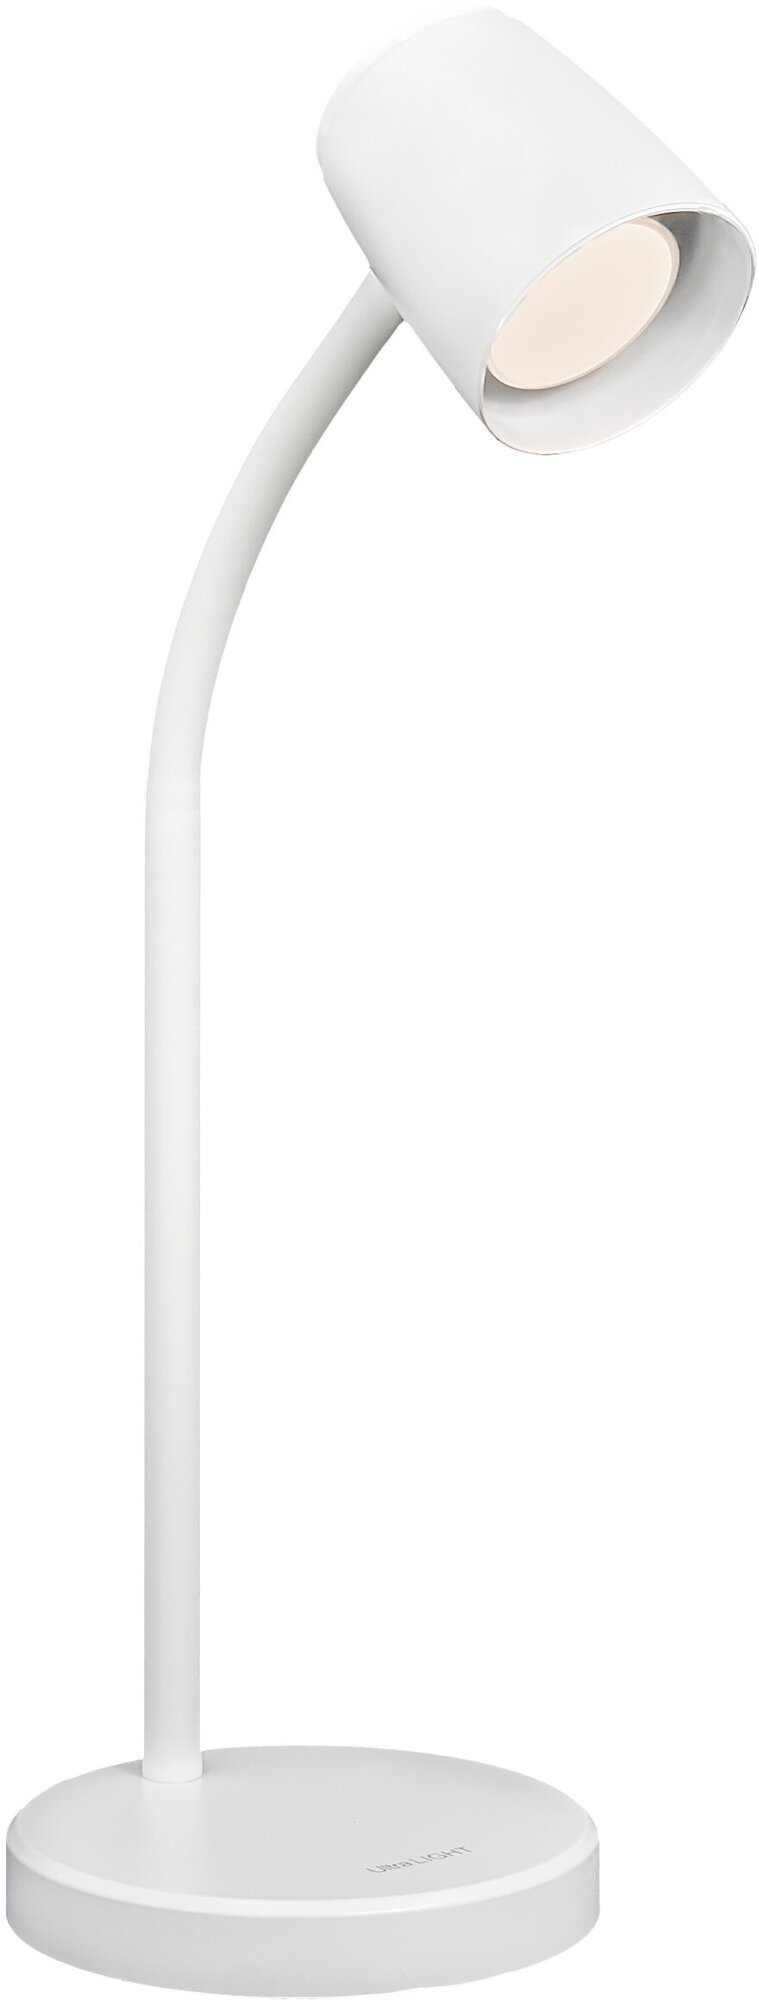 Настольный светодиодный светильник, лампа светодиодная настольная, Ultra LIGHT 2005 GU10, 12 Вт, Белый